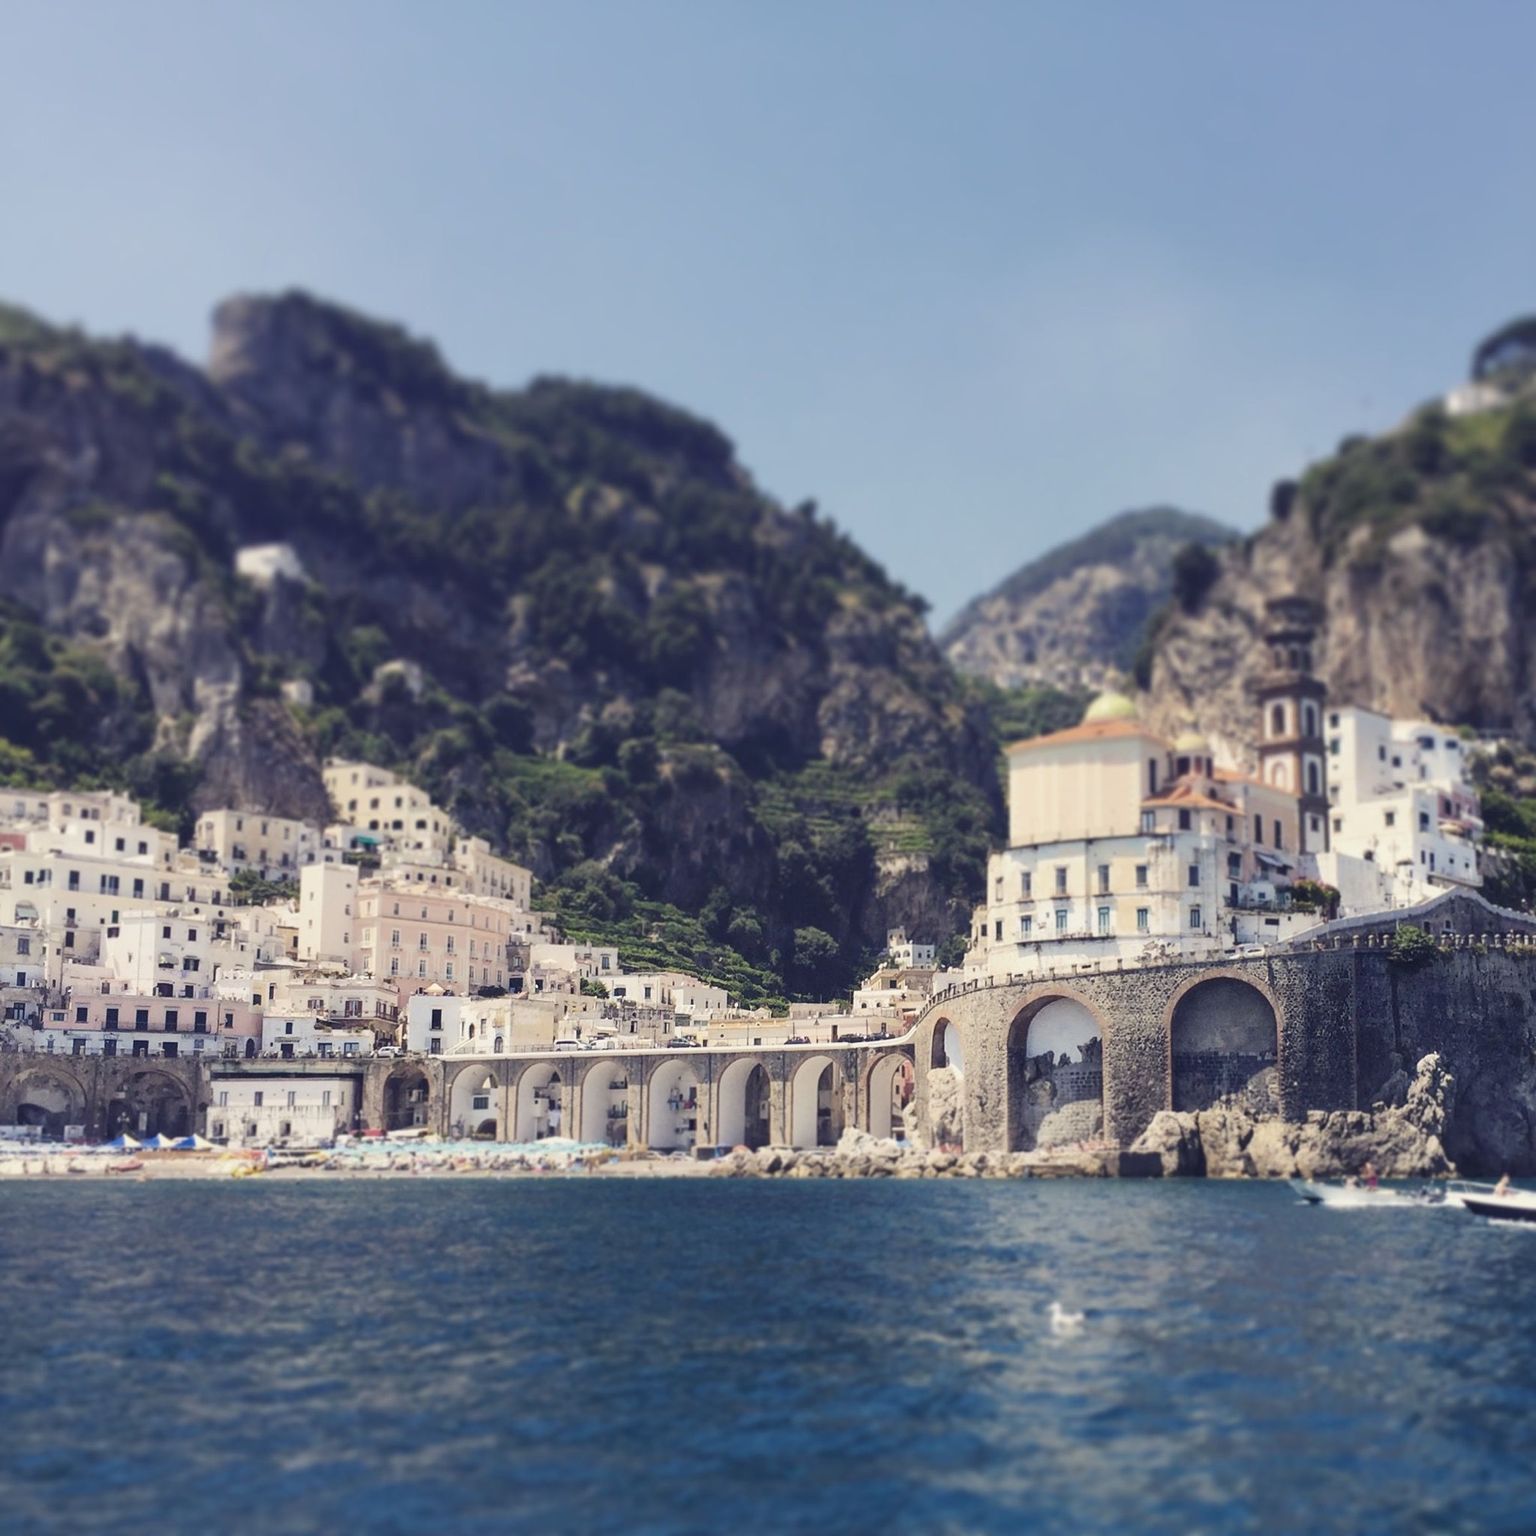 Amalfi coast via boat